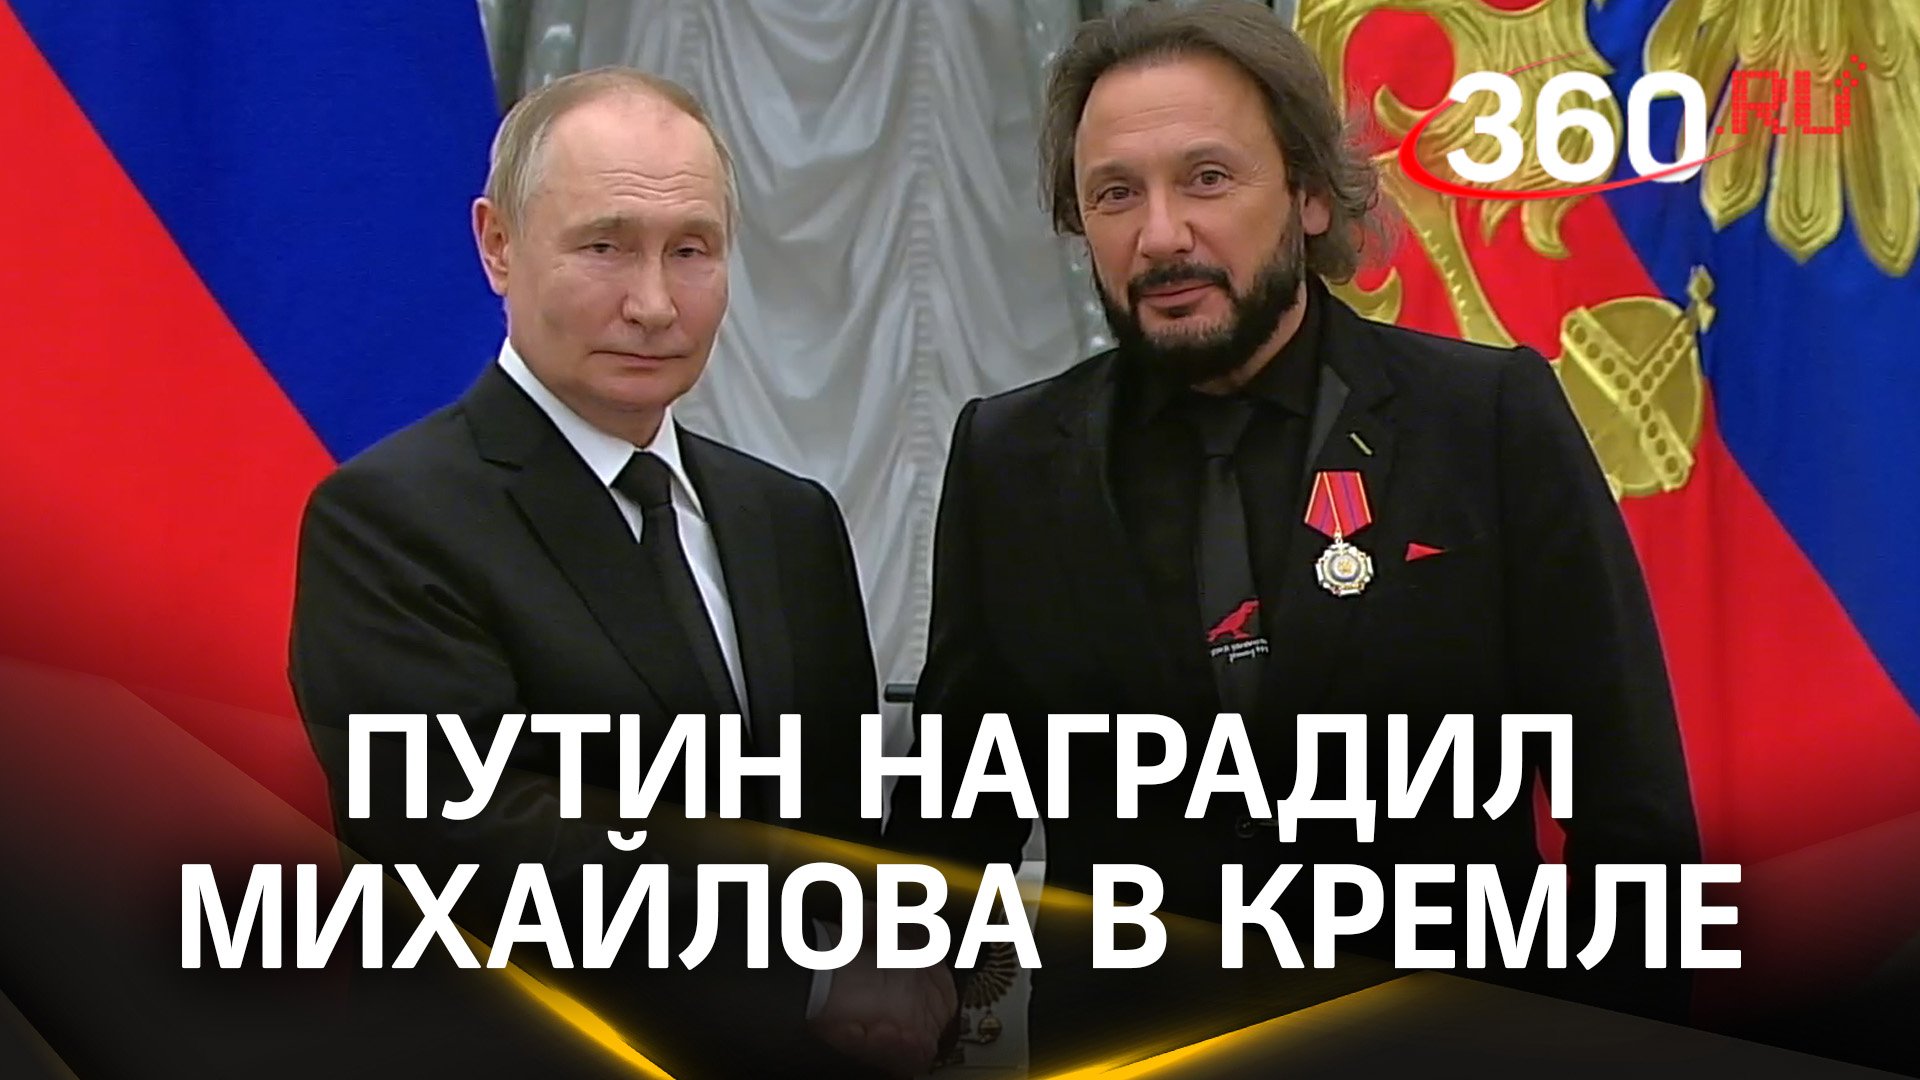 Стас Михайлов Путину: «Бог с Вами!» Президент наградил певца в Кремле